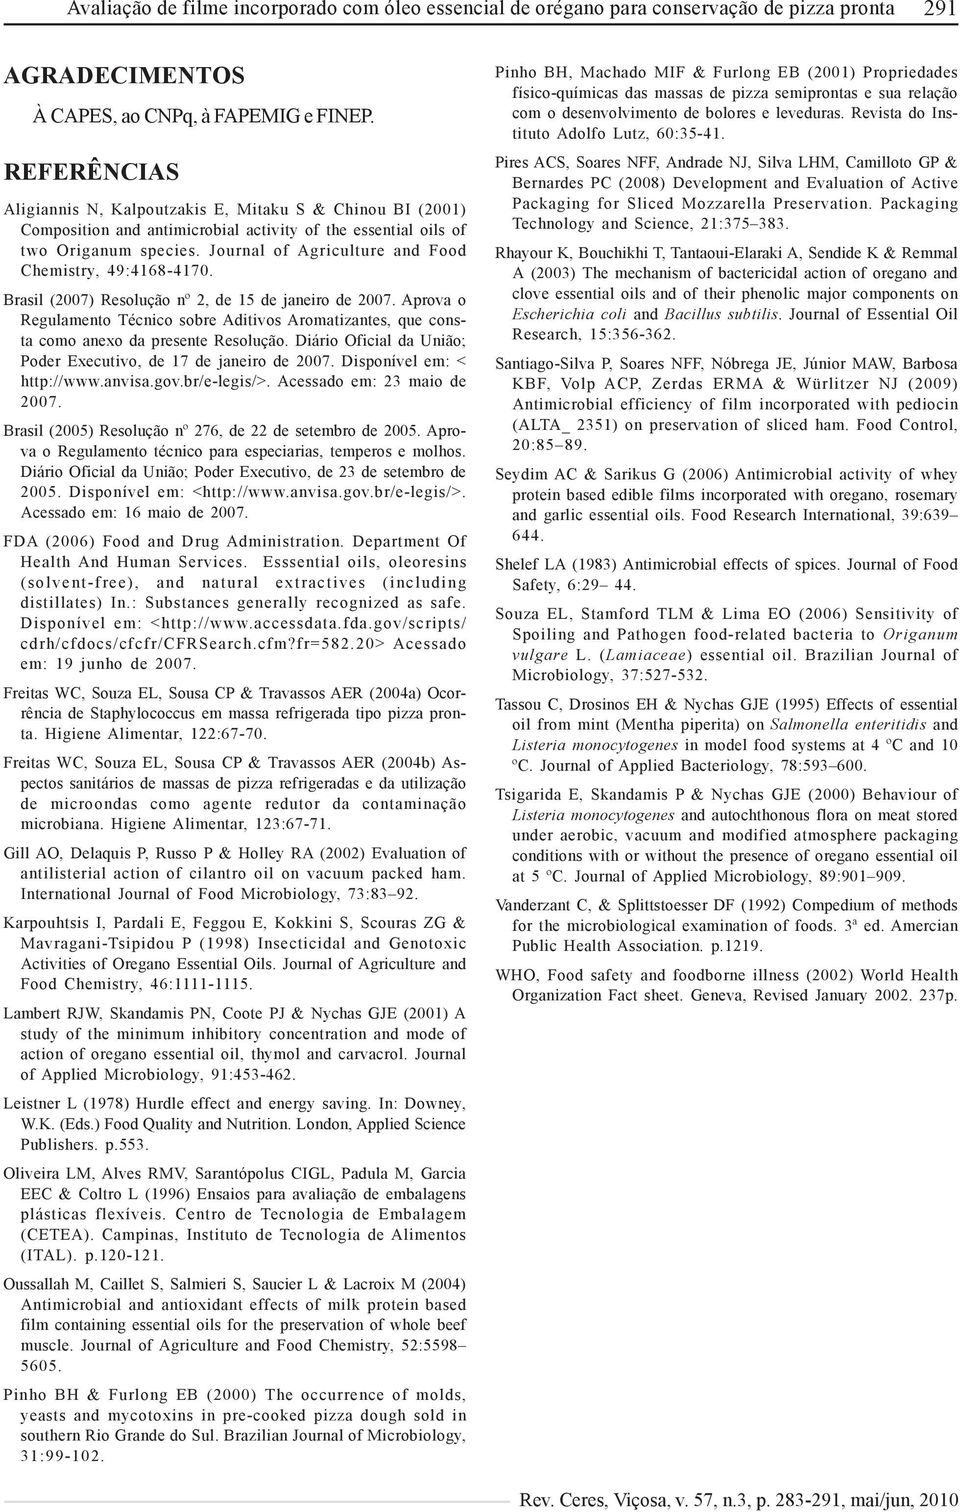 Journal of Agriculture and Food Chemistry, 49:4168-4170. Brasil (2007) Resolução nº 2, de 15 de janeiro de 2007.